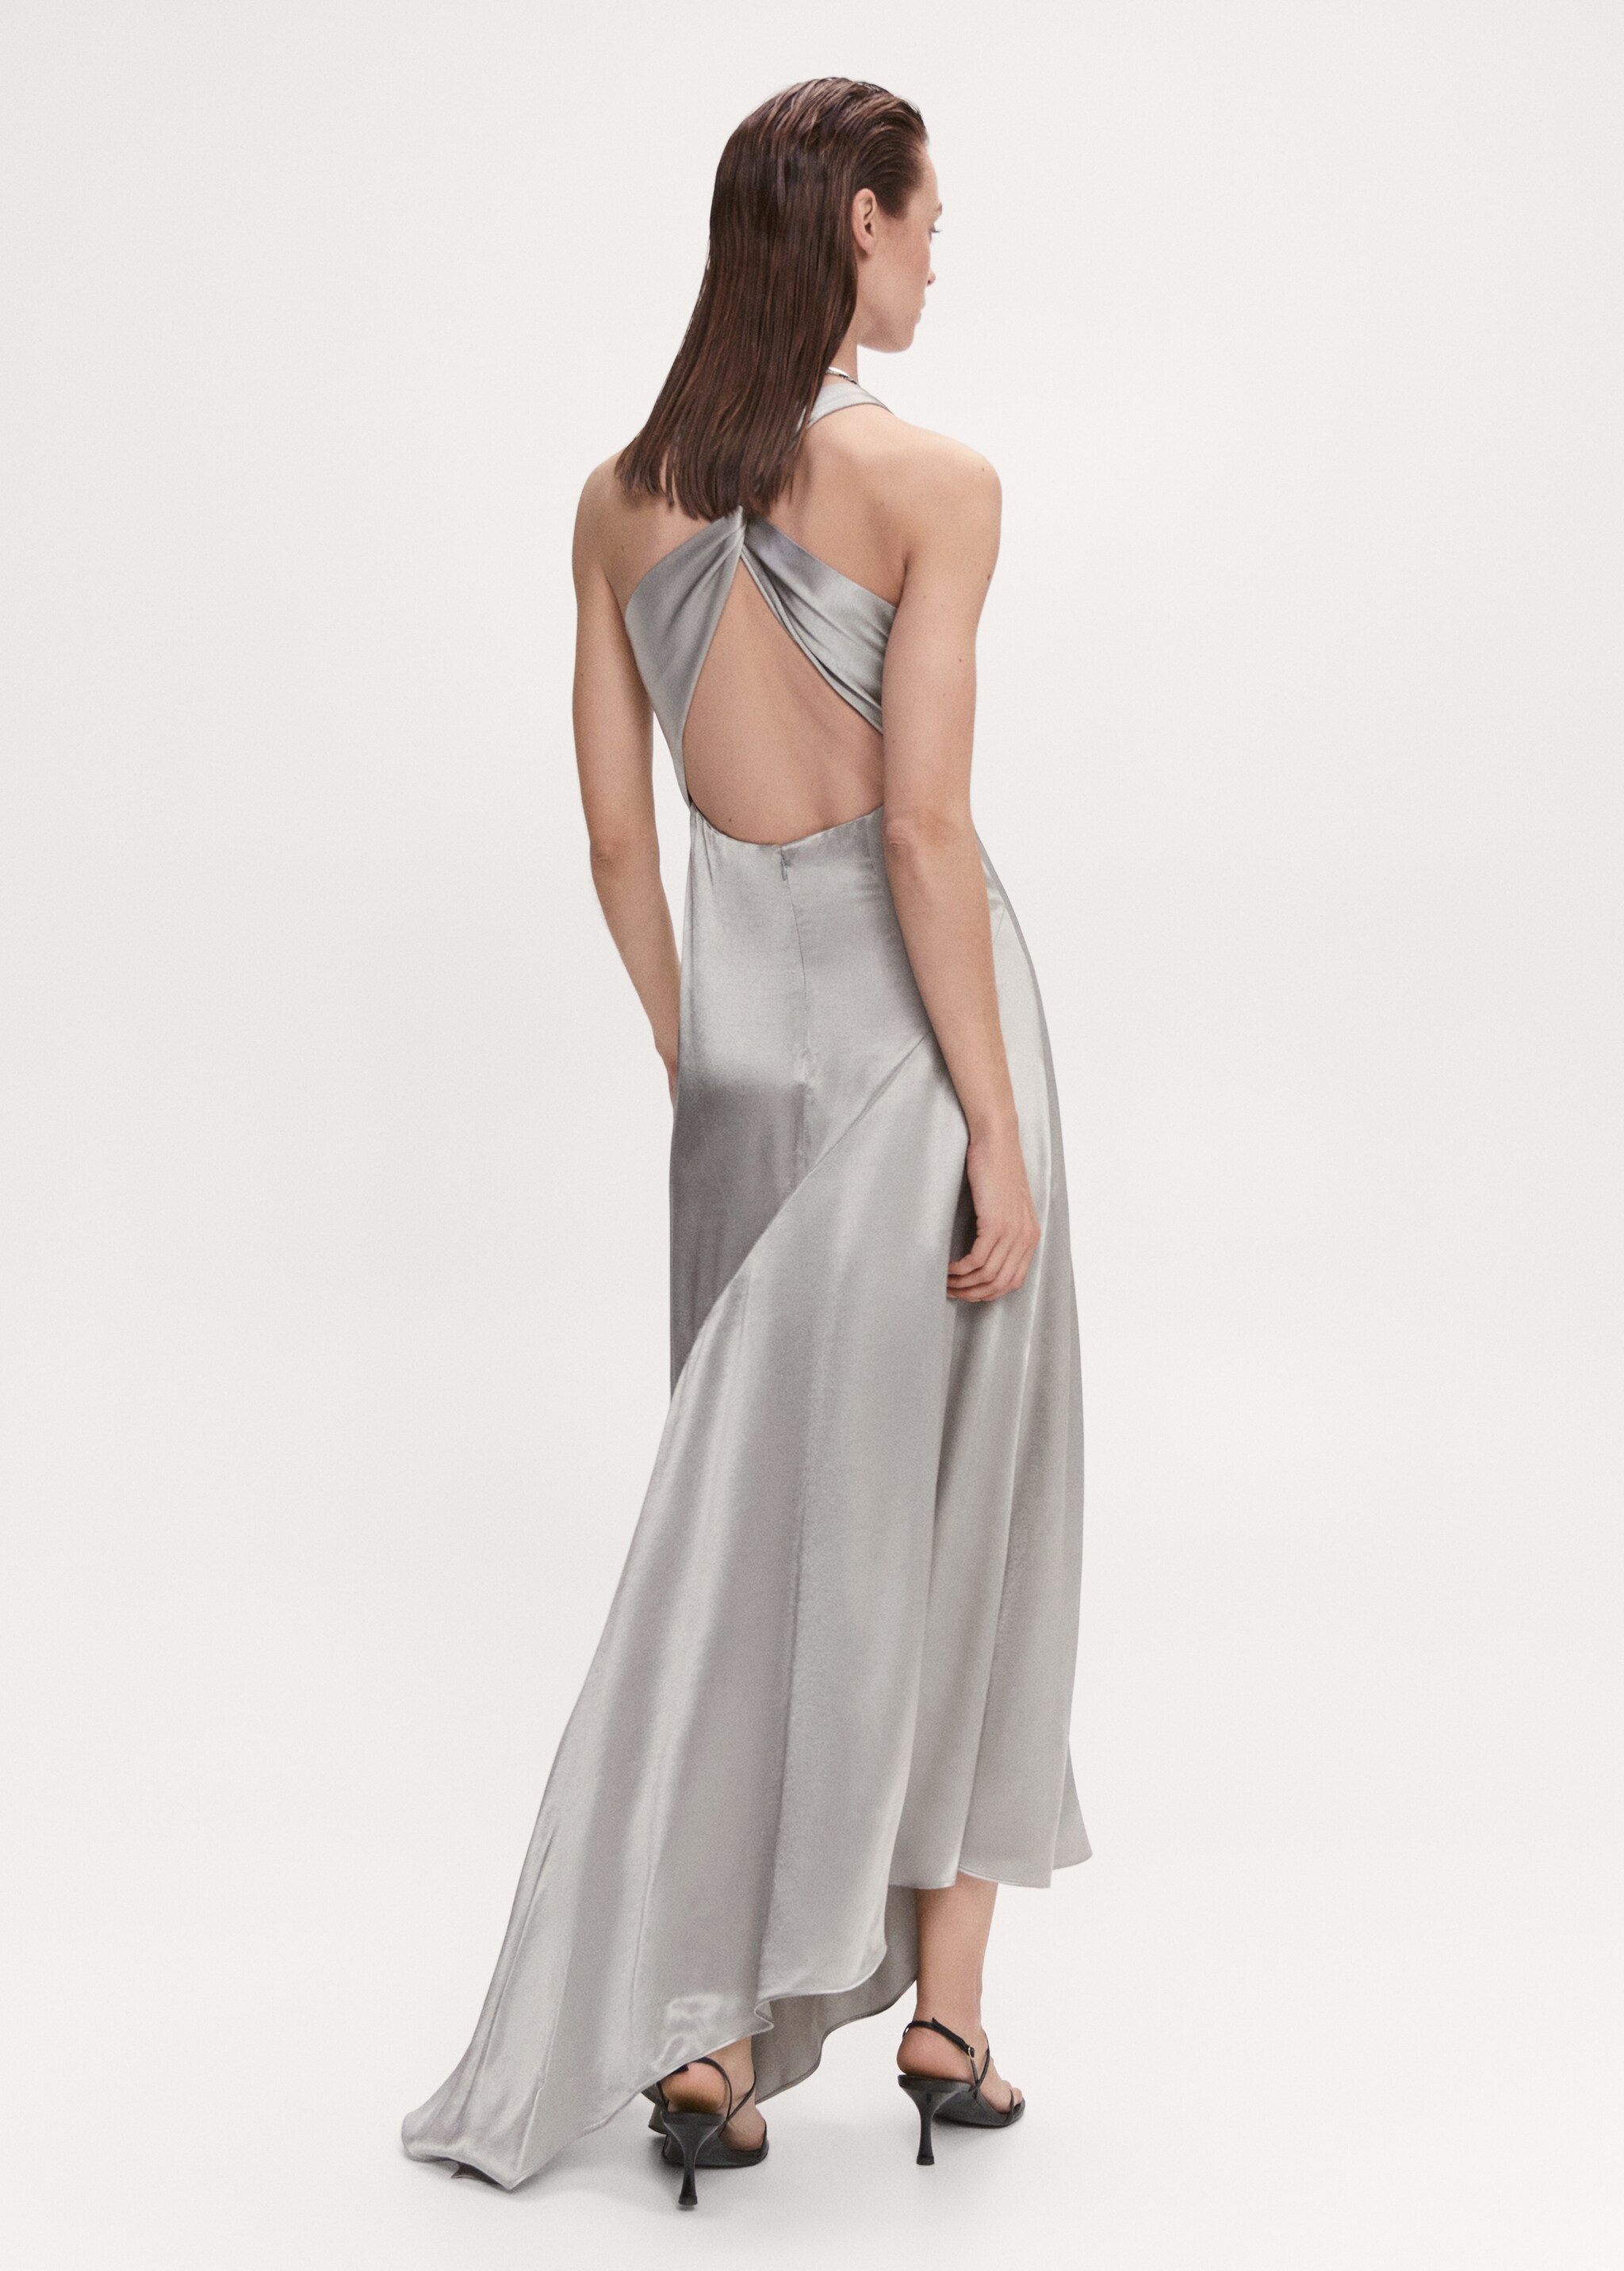 Satiniertes Kleid mit asymmetrischem Kleid - Rückseite des Artikels